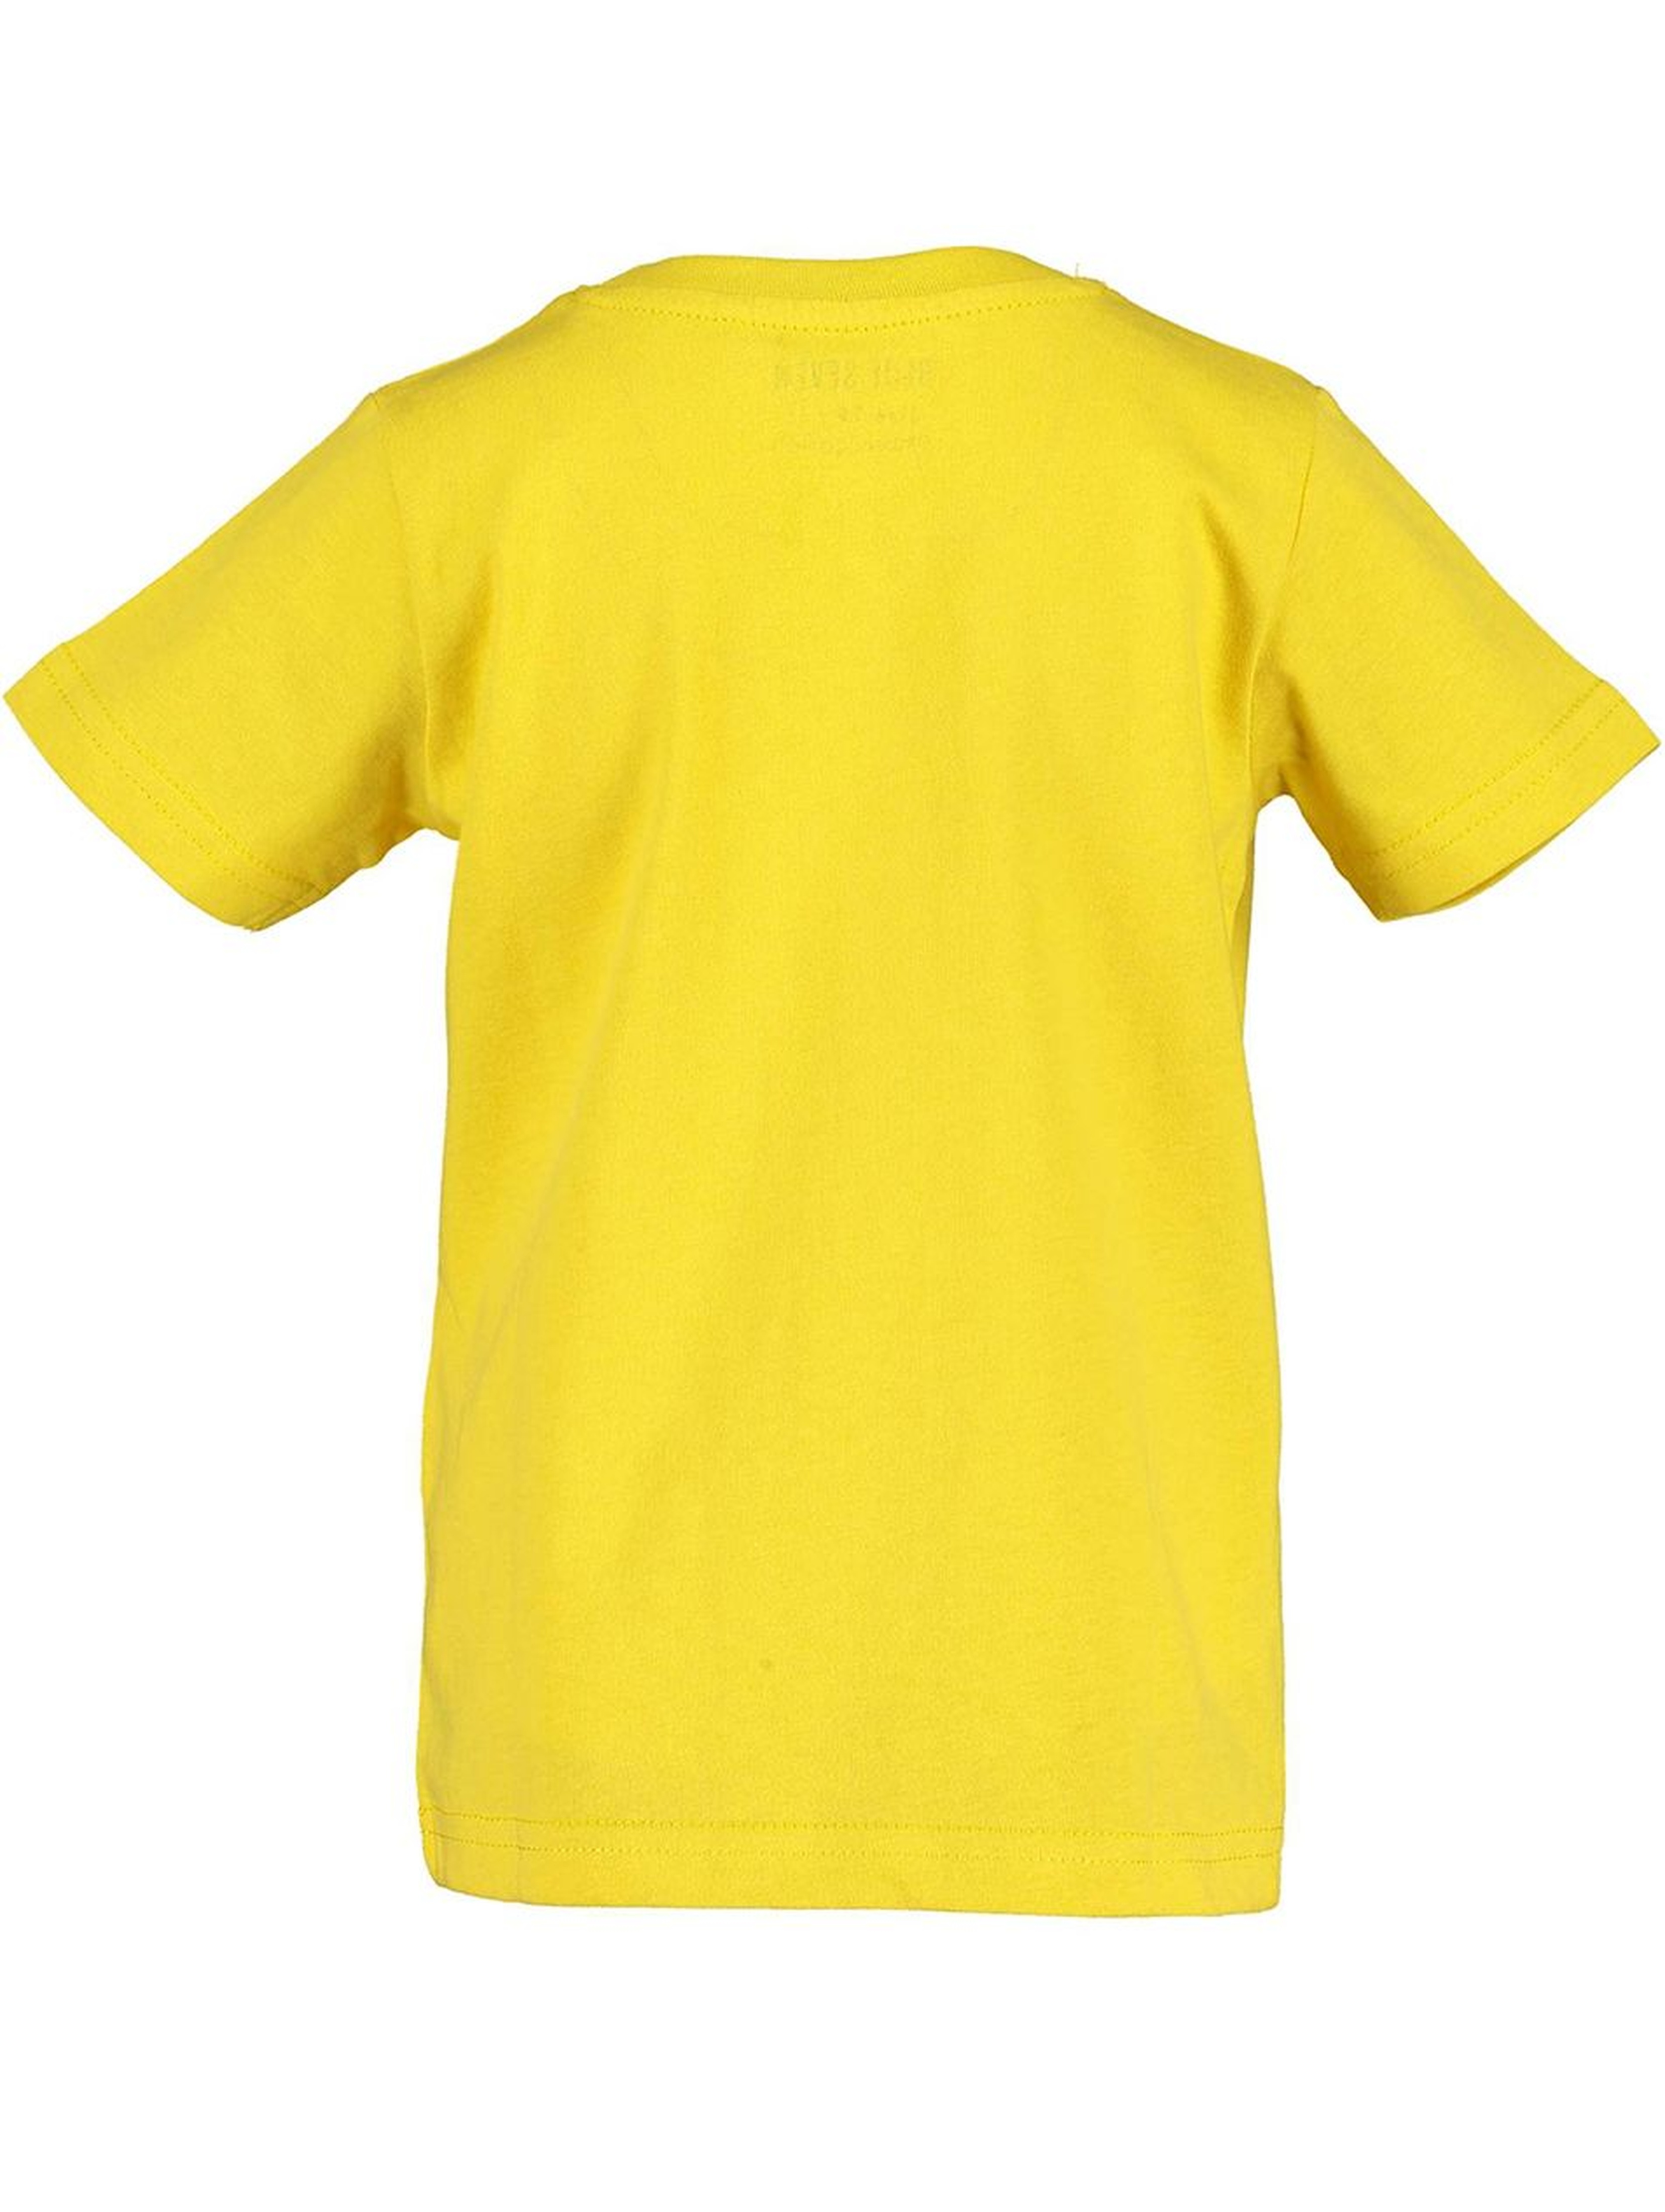 Koszulka chłopięca żółta z nosorożcem